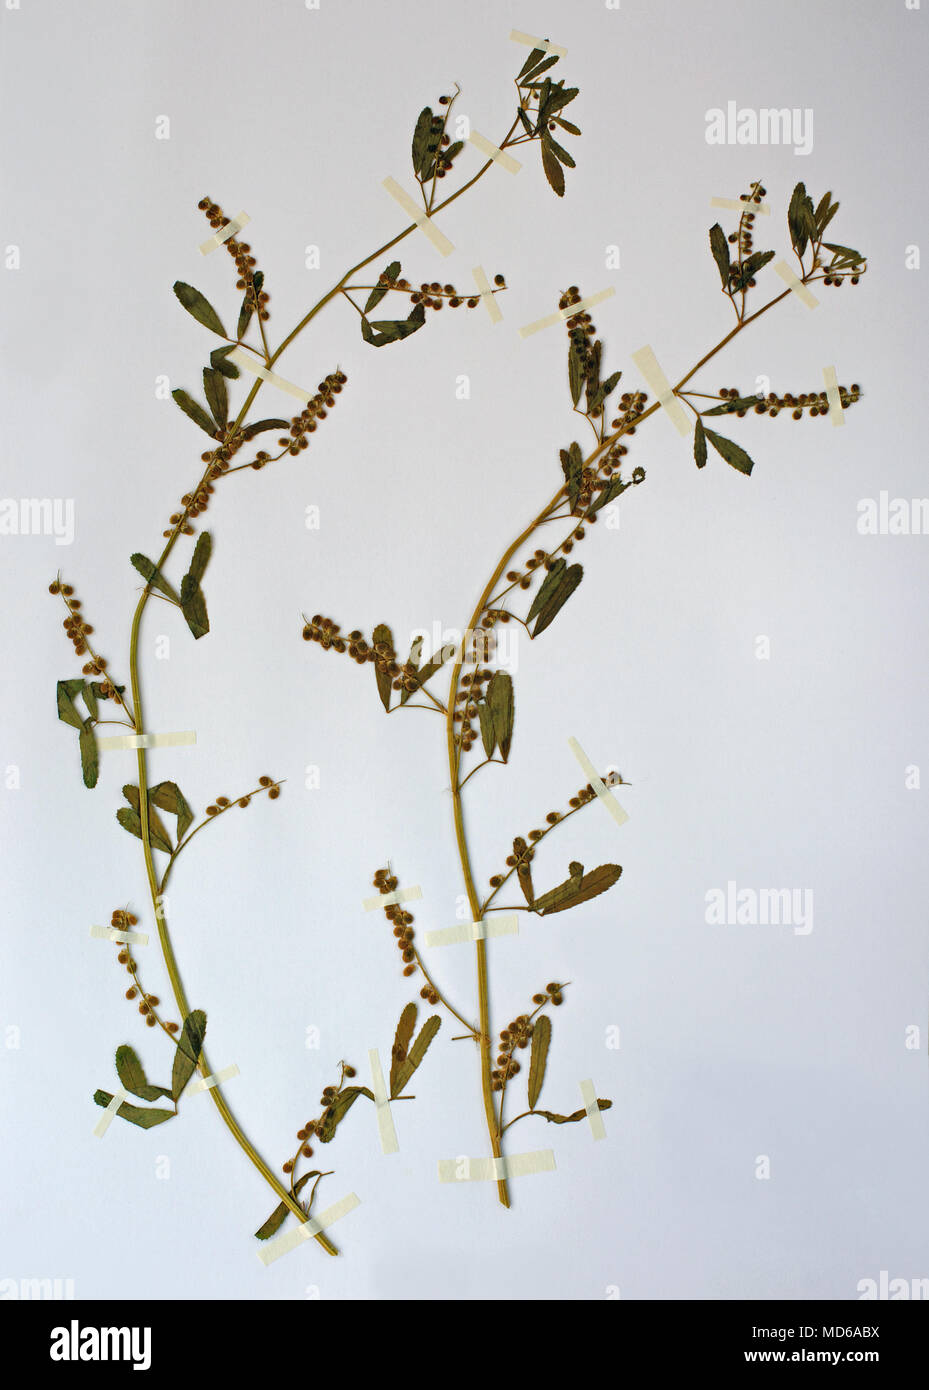 Hoja de herbario con Melilotus indicus, el trébol dulce o vio el trébol, la familia Fabaceae (Leguminosae) Foto de stock